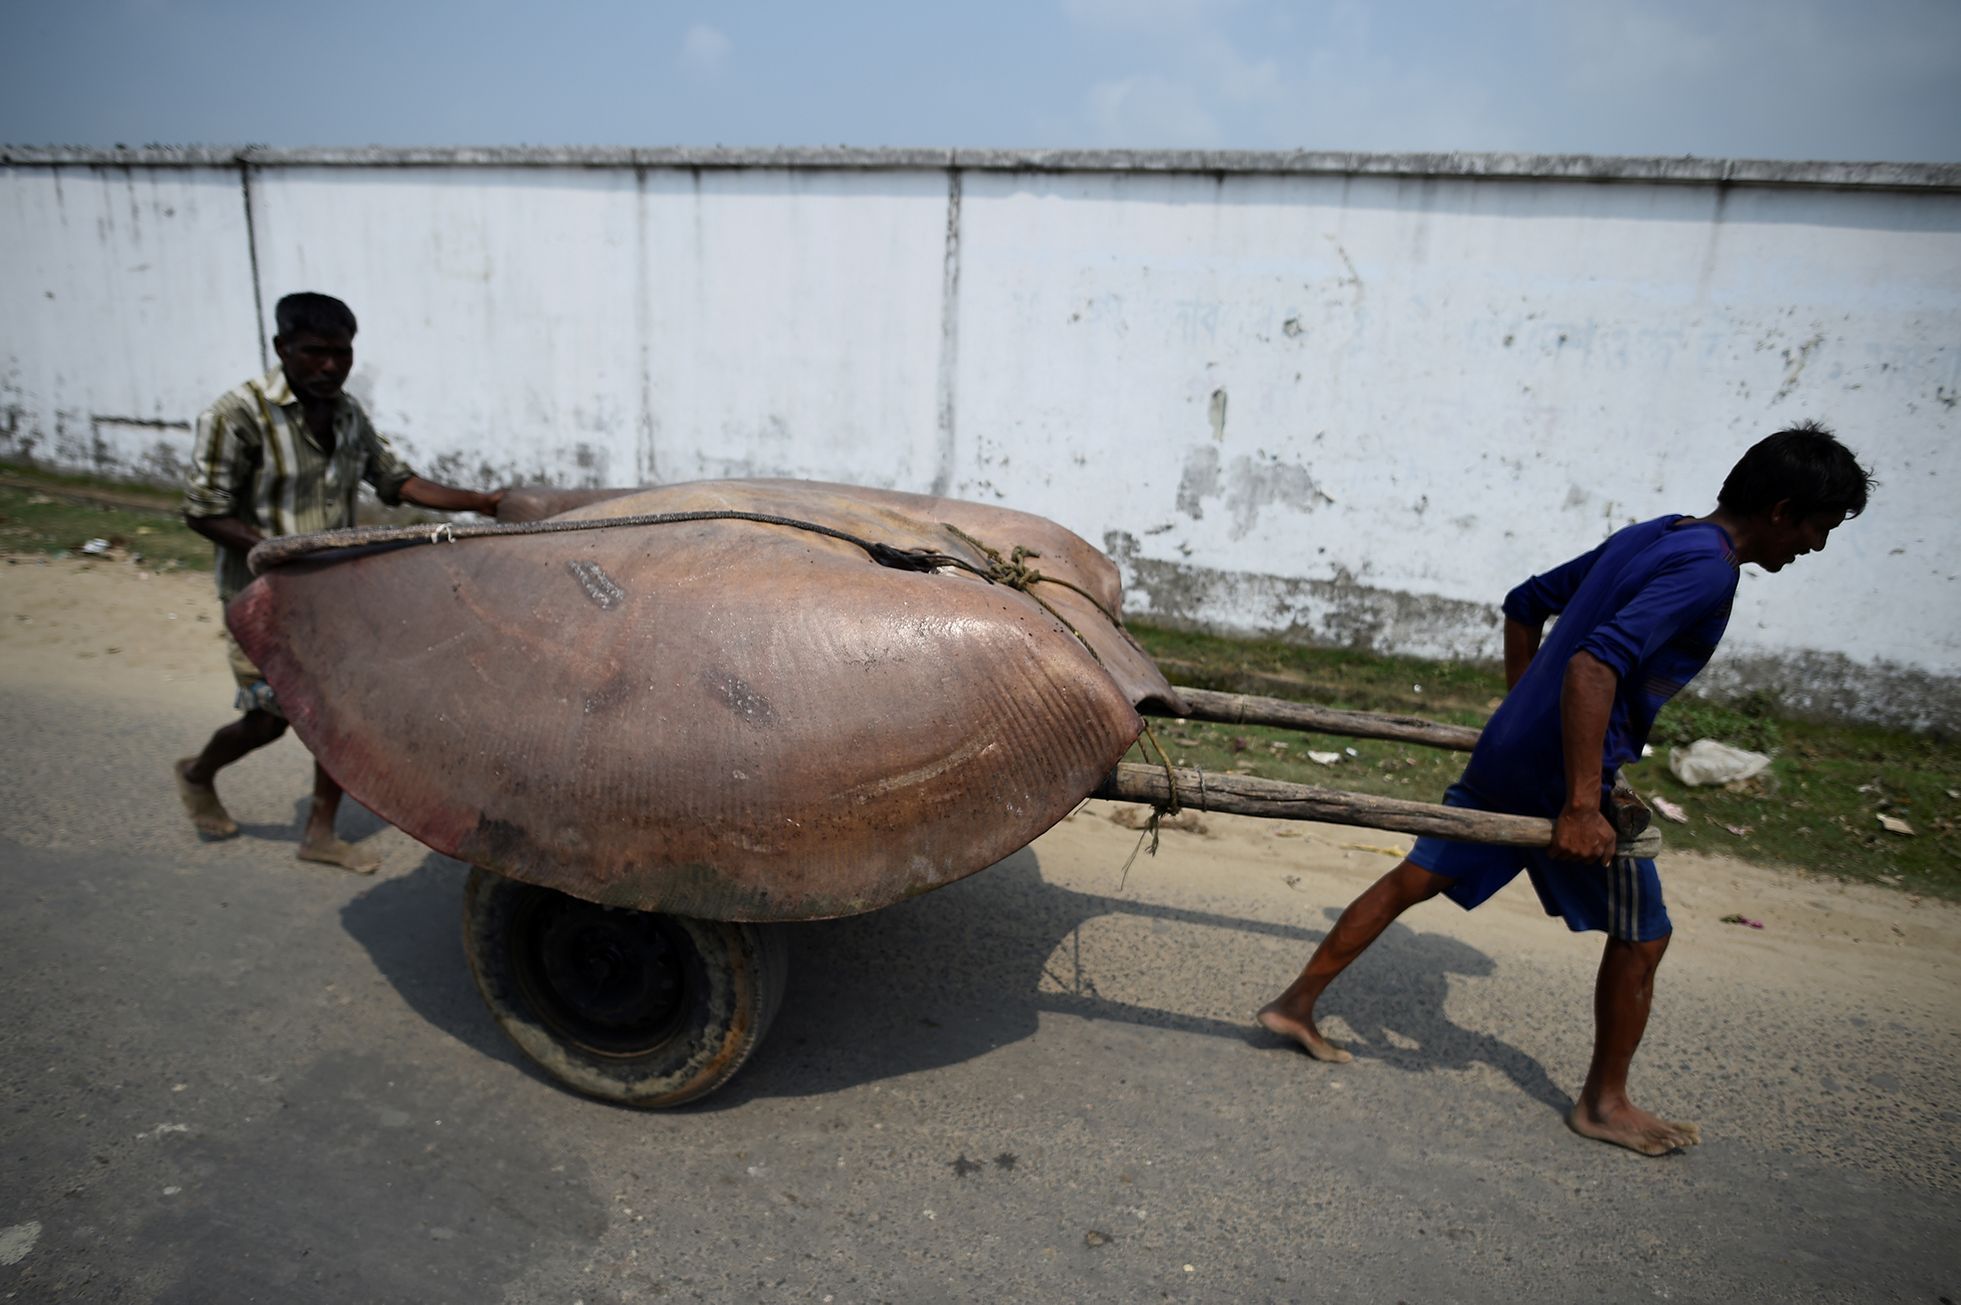 Fotogalerie / Rohingové v Bangladéši / Reuters / 14